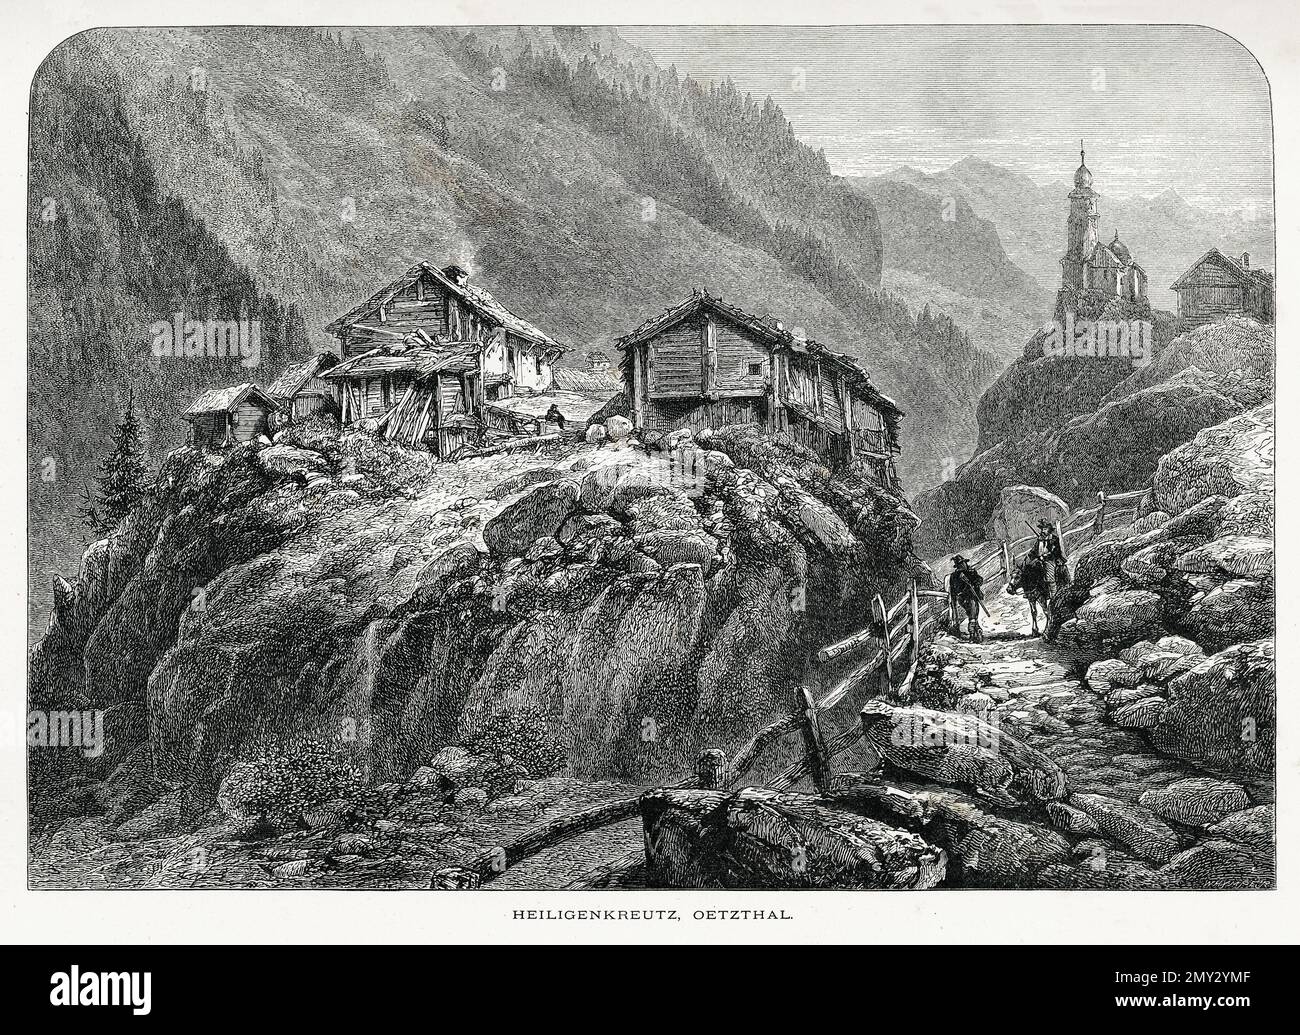 Incisione antica di Heiligenkreuz, un villaggio di Baden, Austria. Illustrazione pubblicata in picturesque Europe, Vol. V (Cassell & Company, Limited: LON Foto Stock